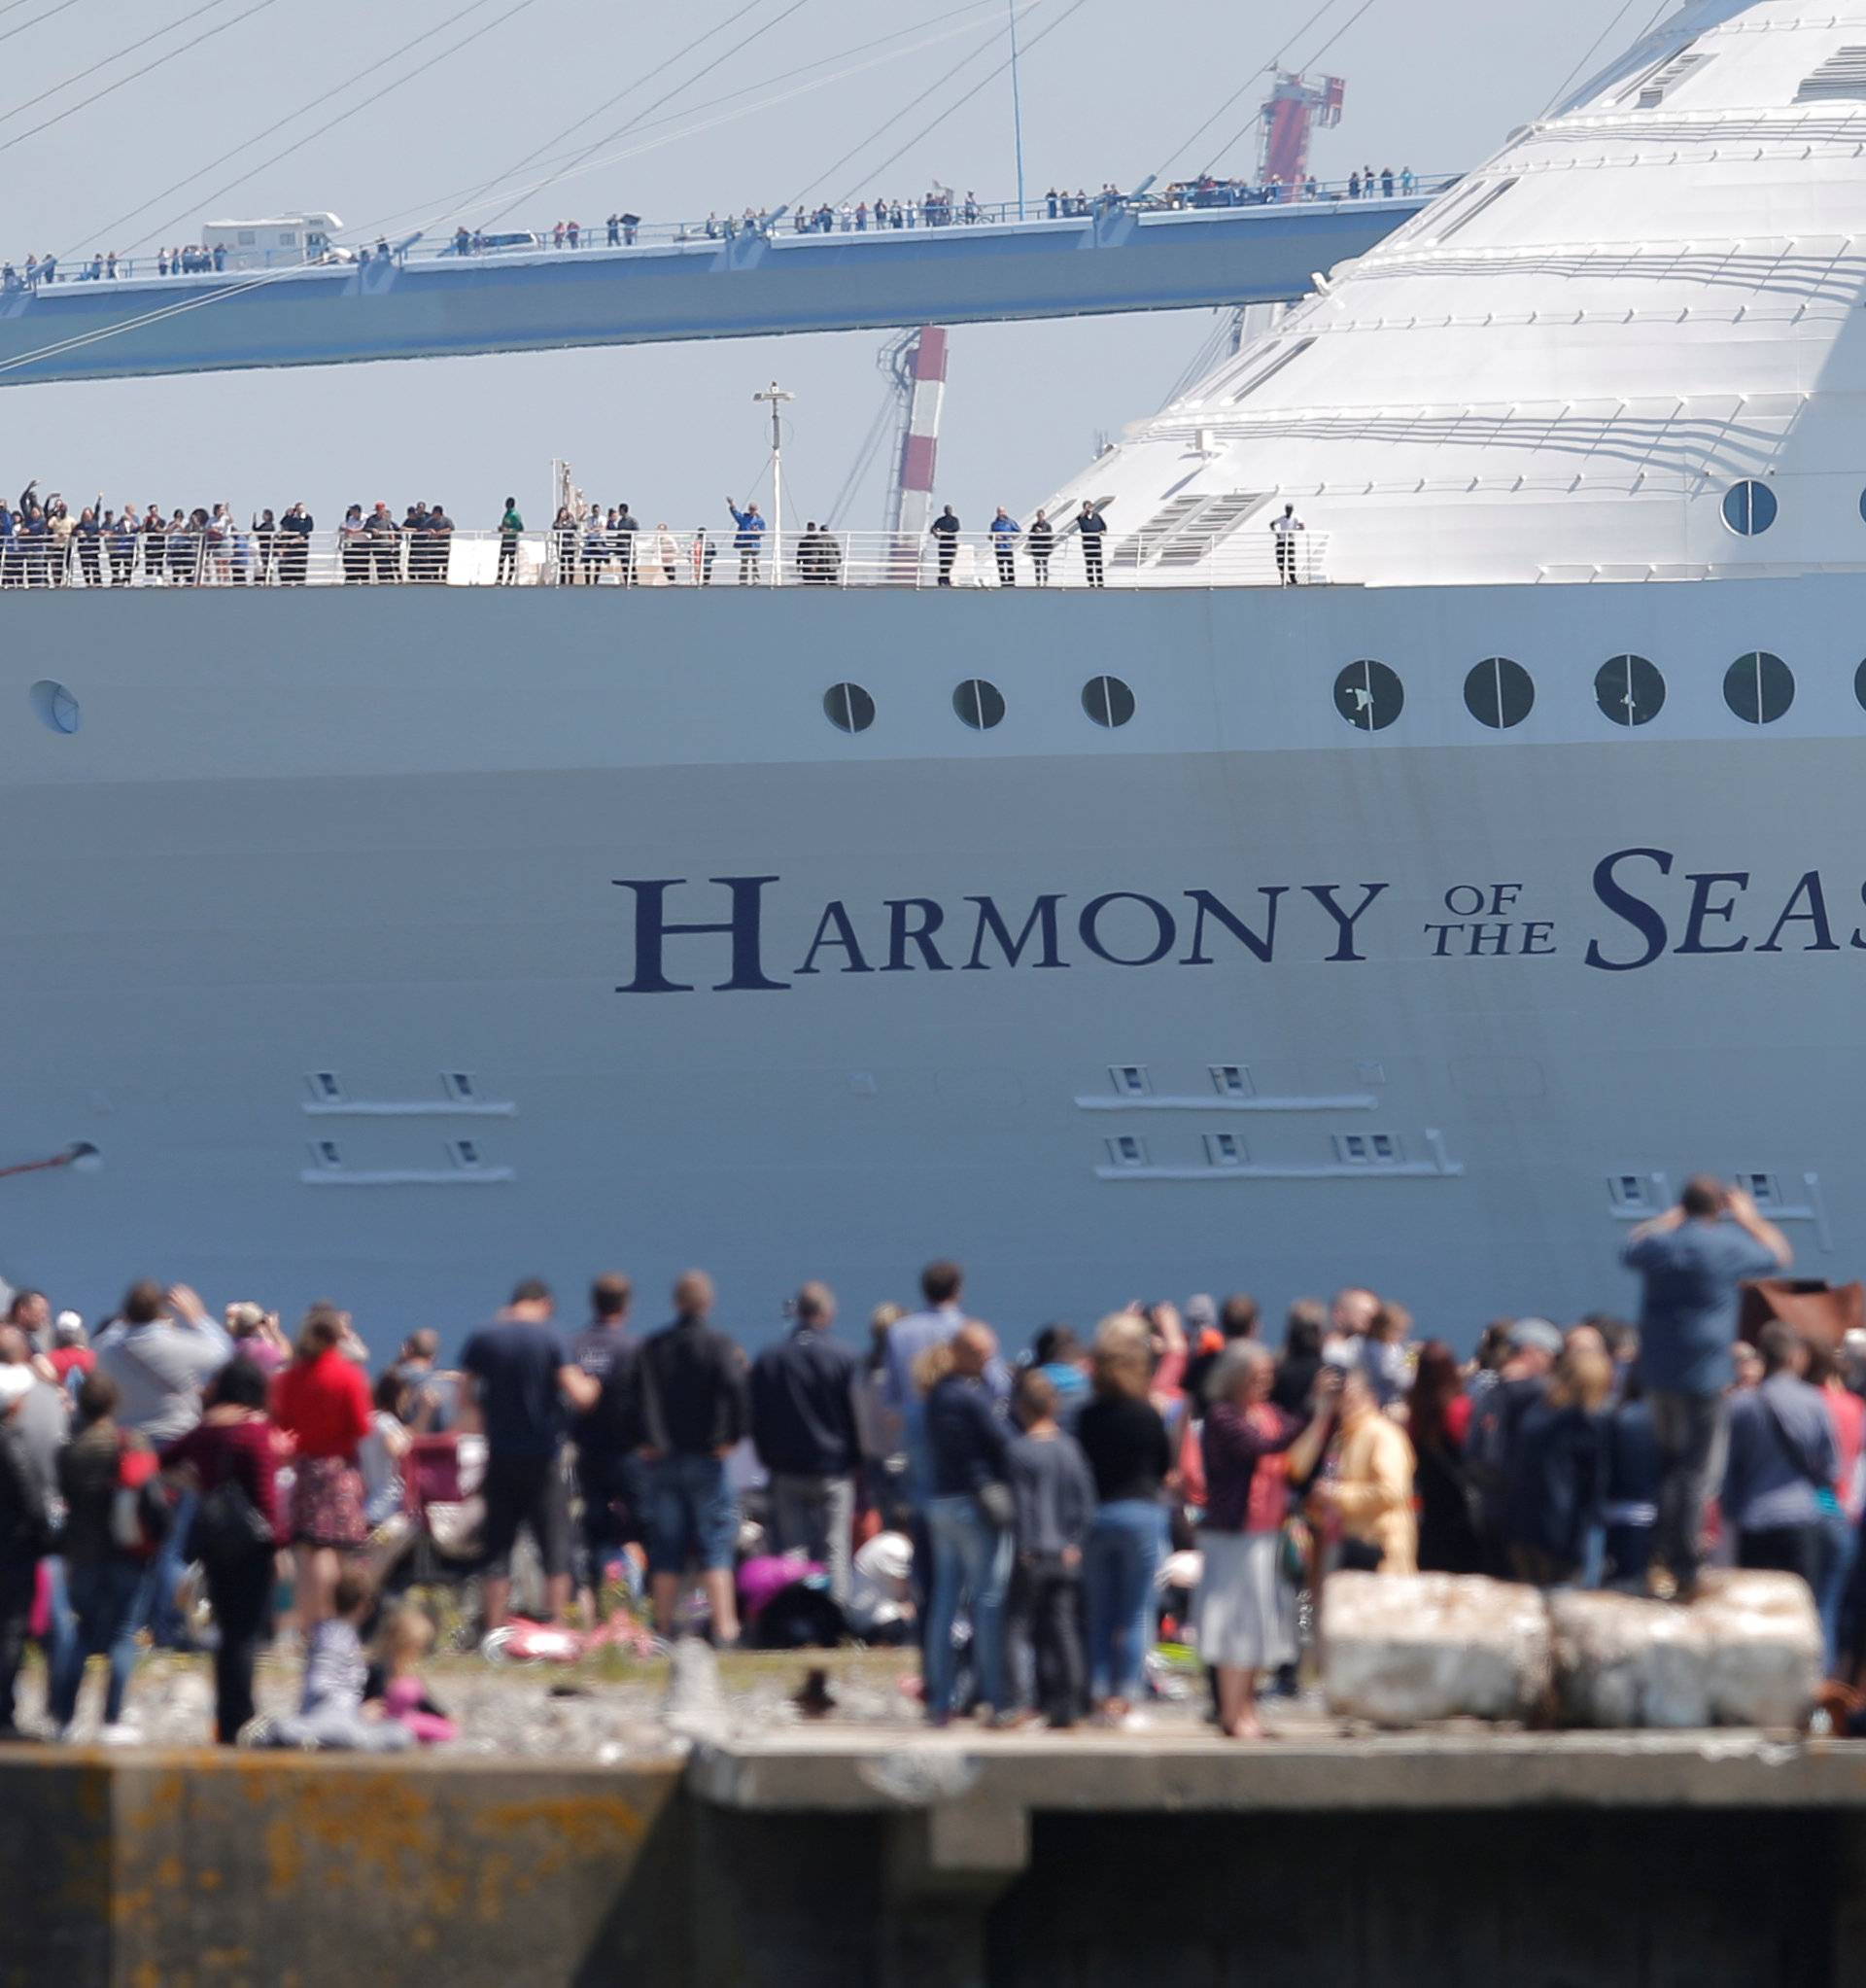 The Harmony of the Seas ( Oasis 3 ) class ship leaves the STX Les Chantiers de l'Atlantique shipyard site in Saint-Nazaire